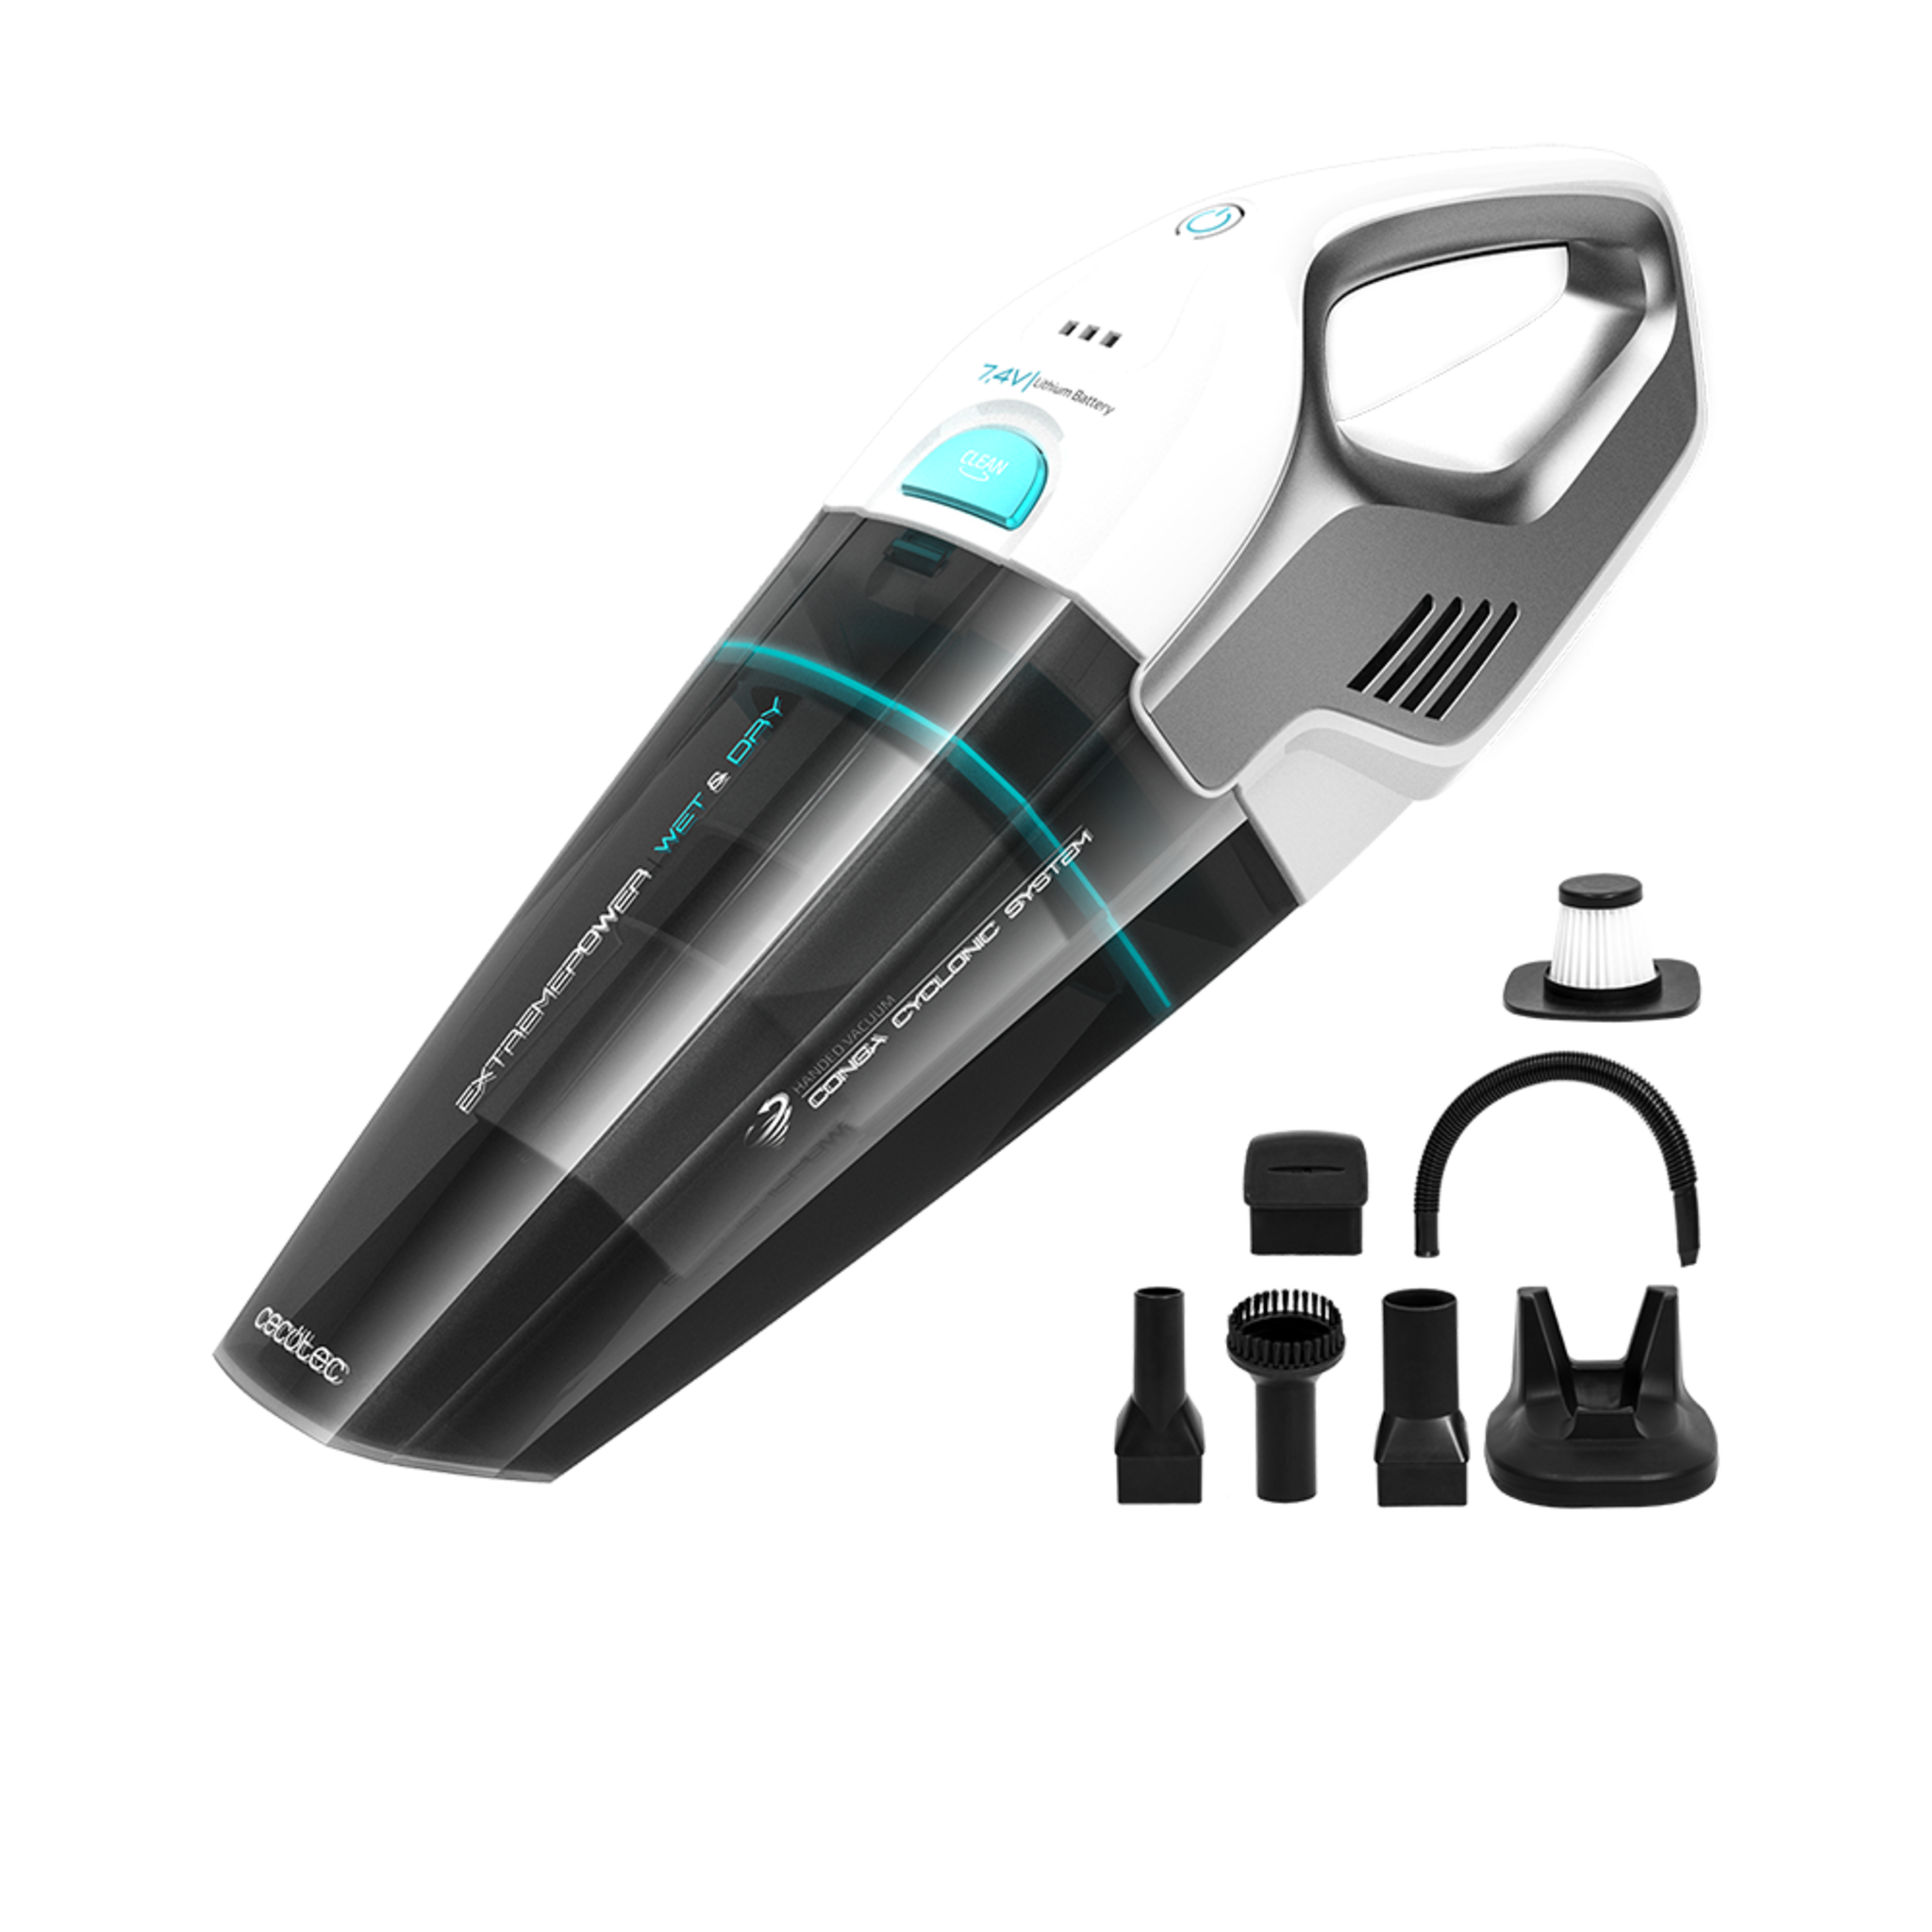 Aspirateur à main Conga Immortal ExtremeSuction 7,4 V Hand. Il aspire les solides et les liquides, léger et sans sac, autonomie jusqu'à 20 minutes, 7,4 V, technologie cyclonique